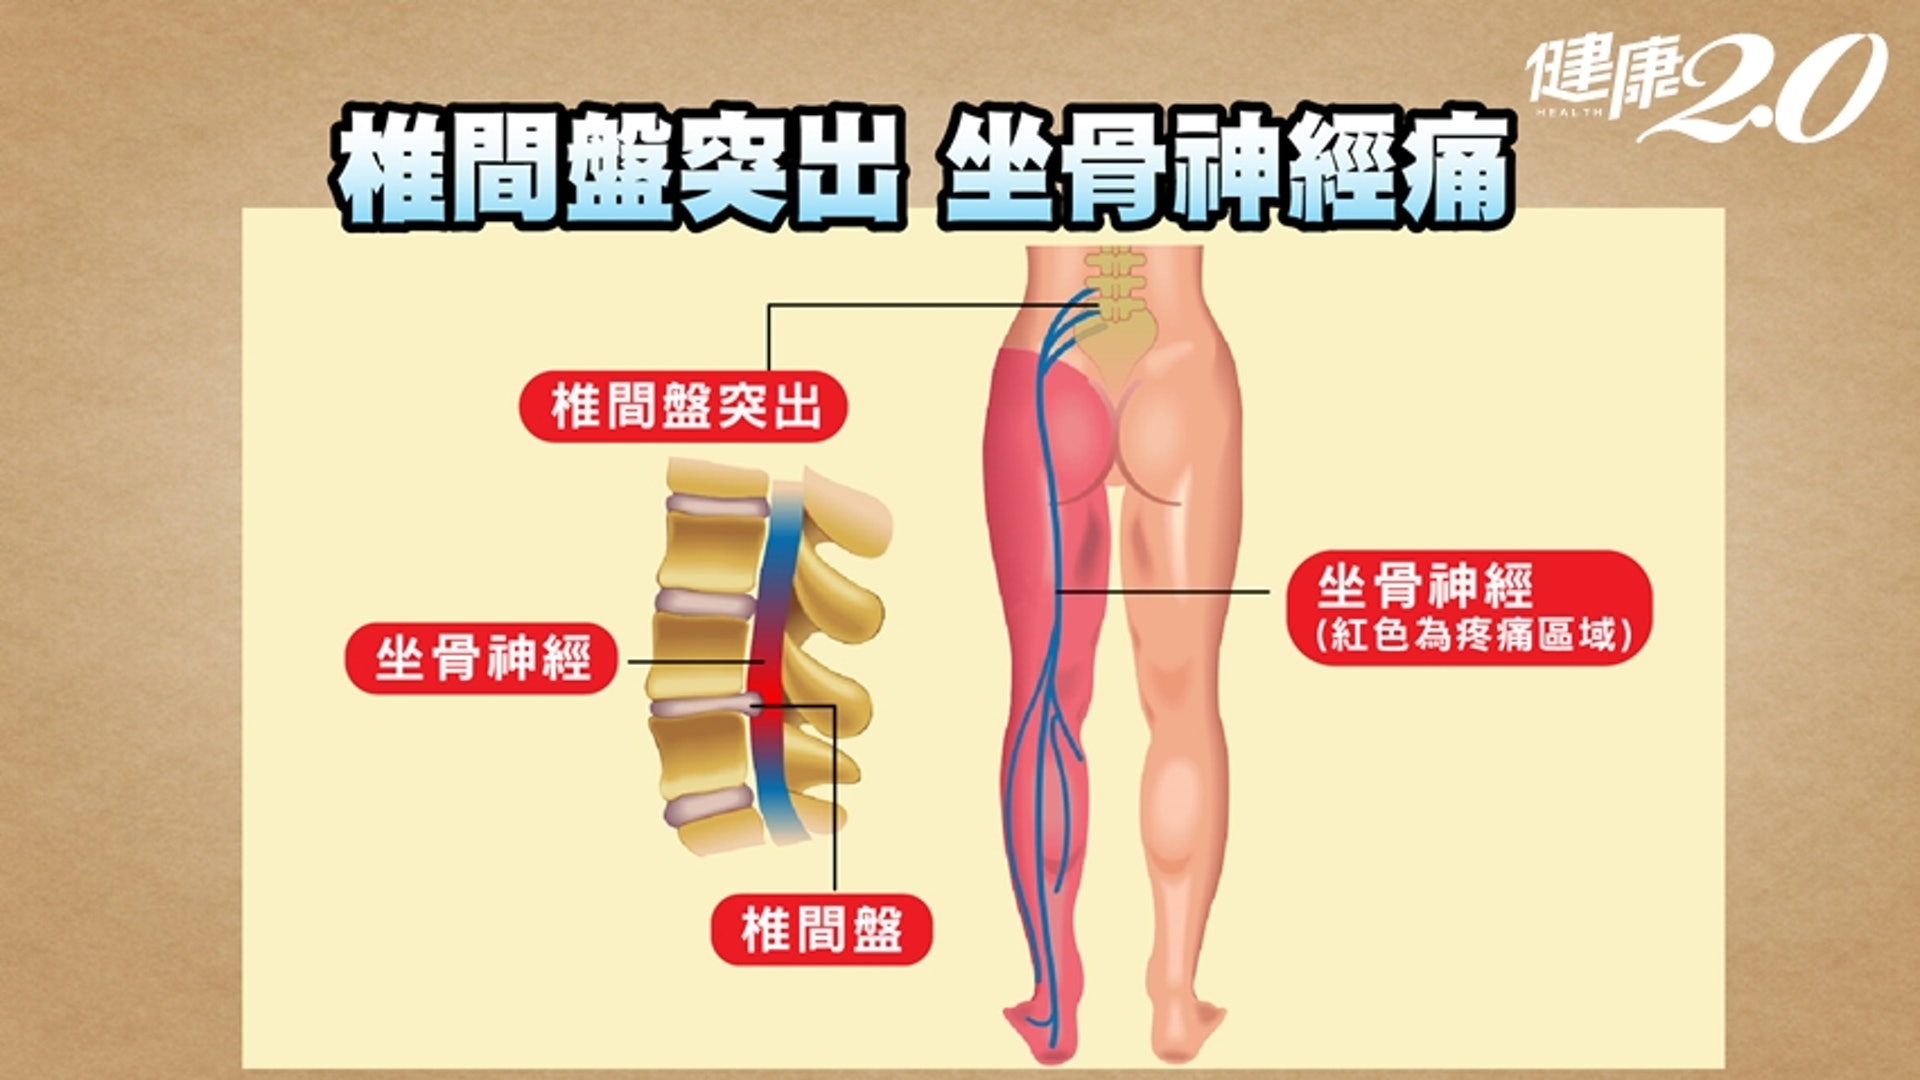 若是比較嚴重的疼痛則會壓迫到神經，就會從臀部開始往下，連腿部也會跟著痛，然後依照神經的分布產生不同的麻木感。（健康2.0授權使用）